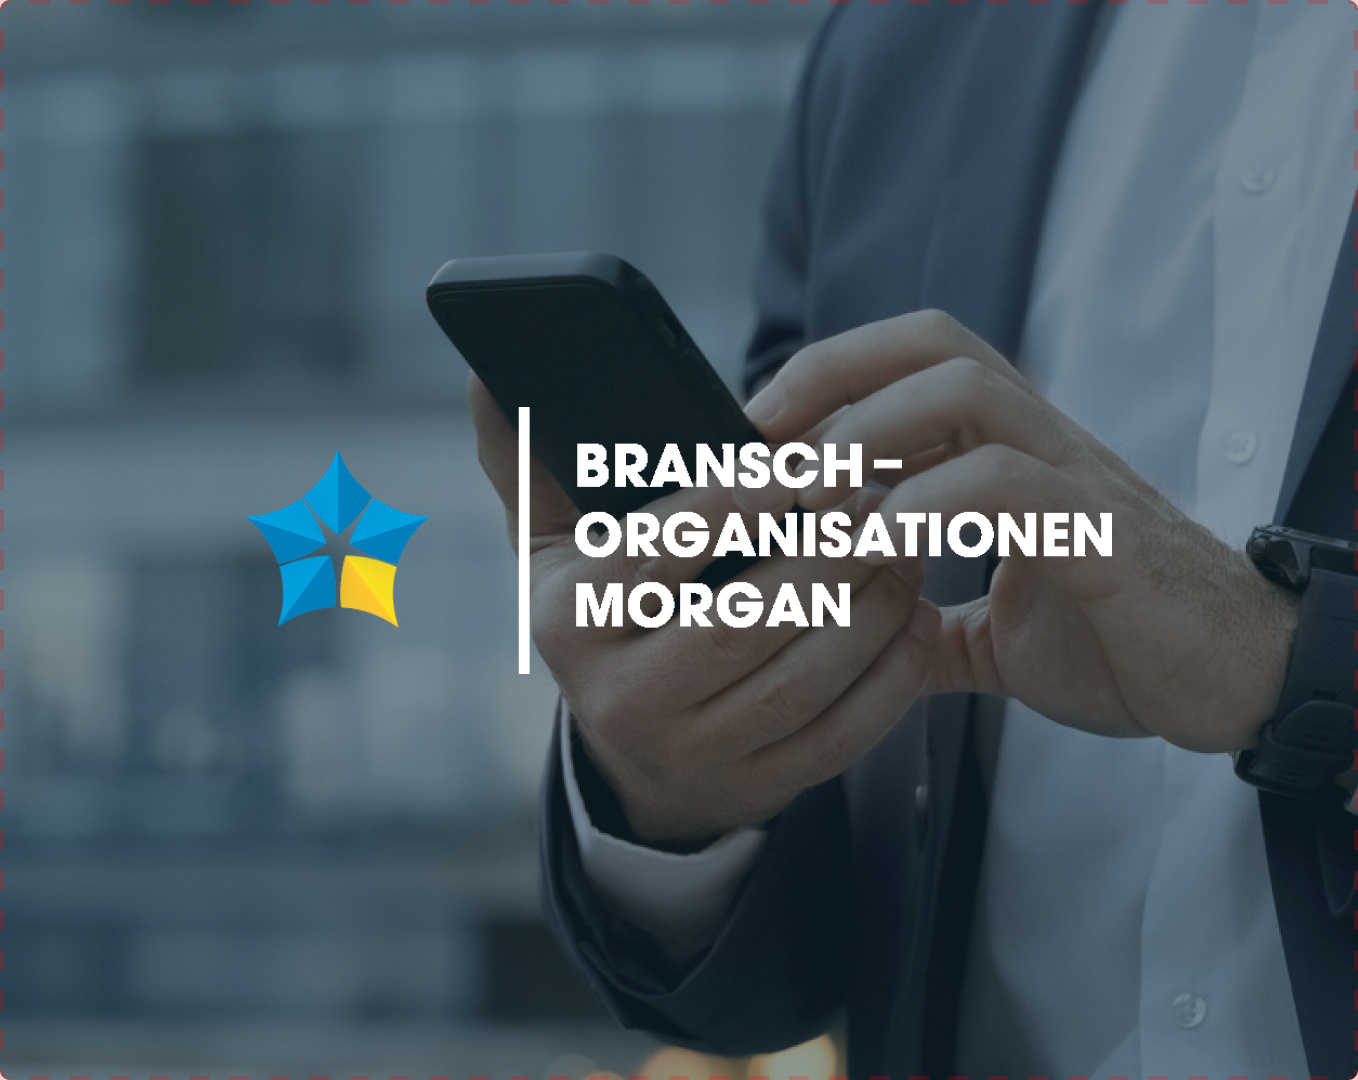 Morgan bransch-organisationen